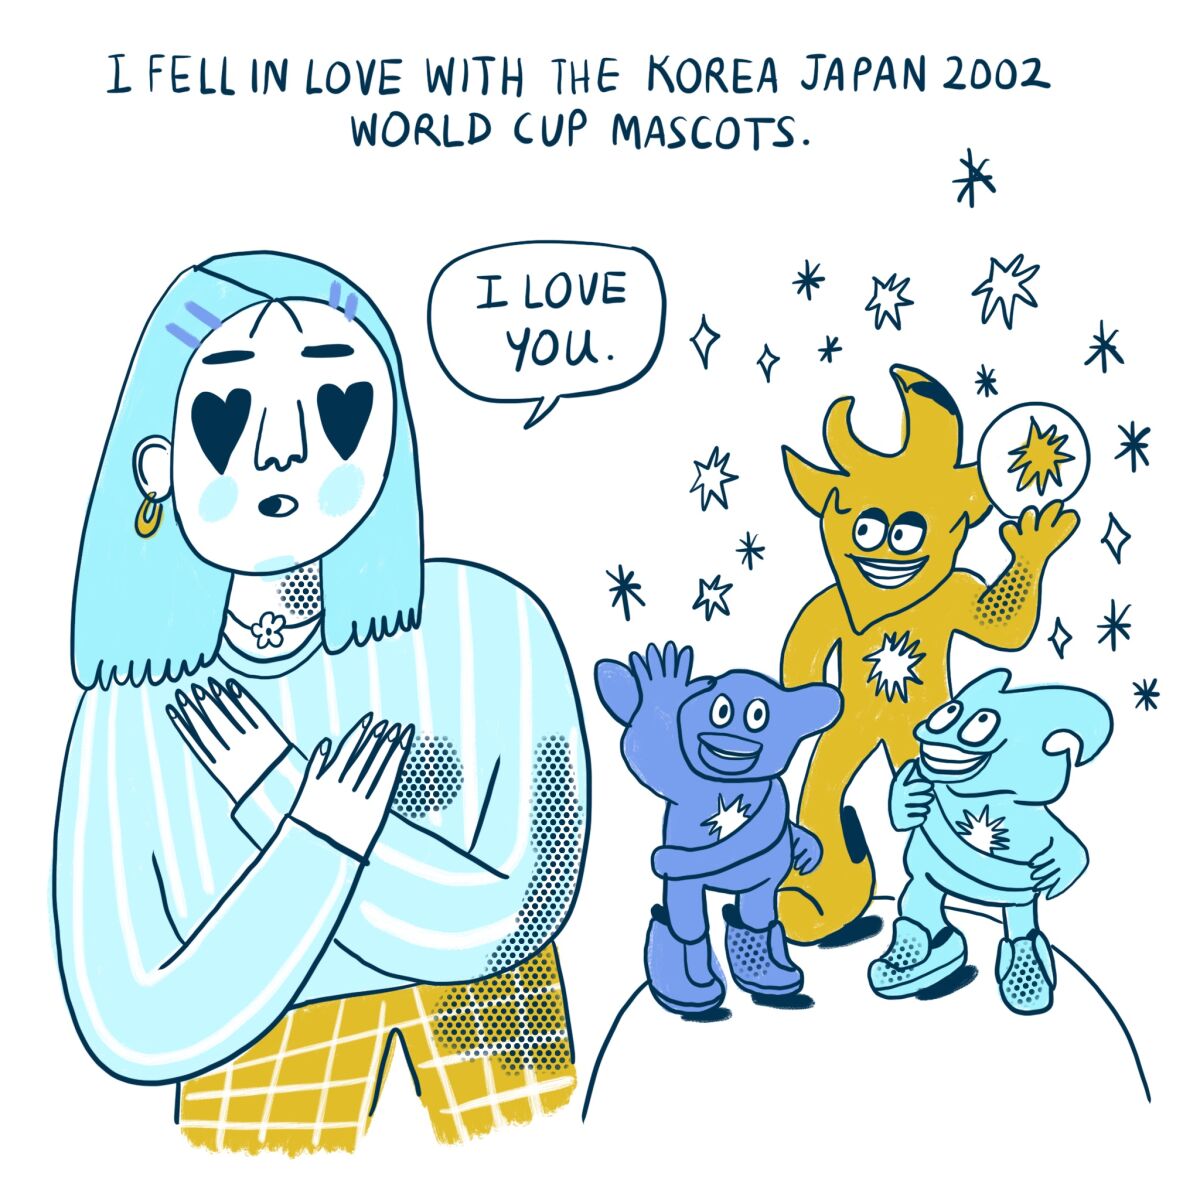 Me enamoré de las mascotas del mundial Corea Japón 2002 